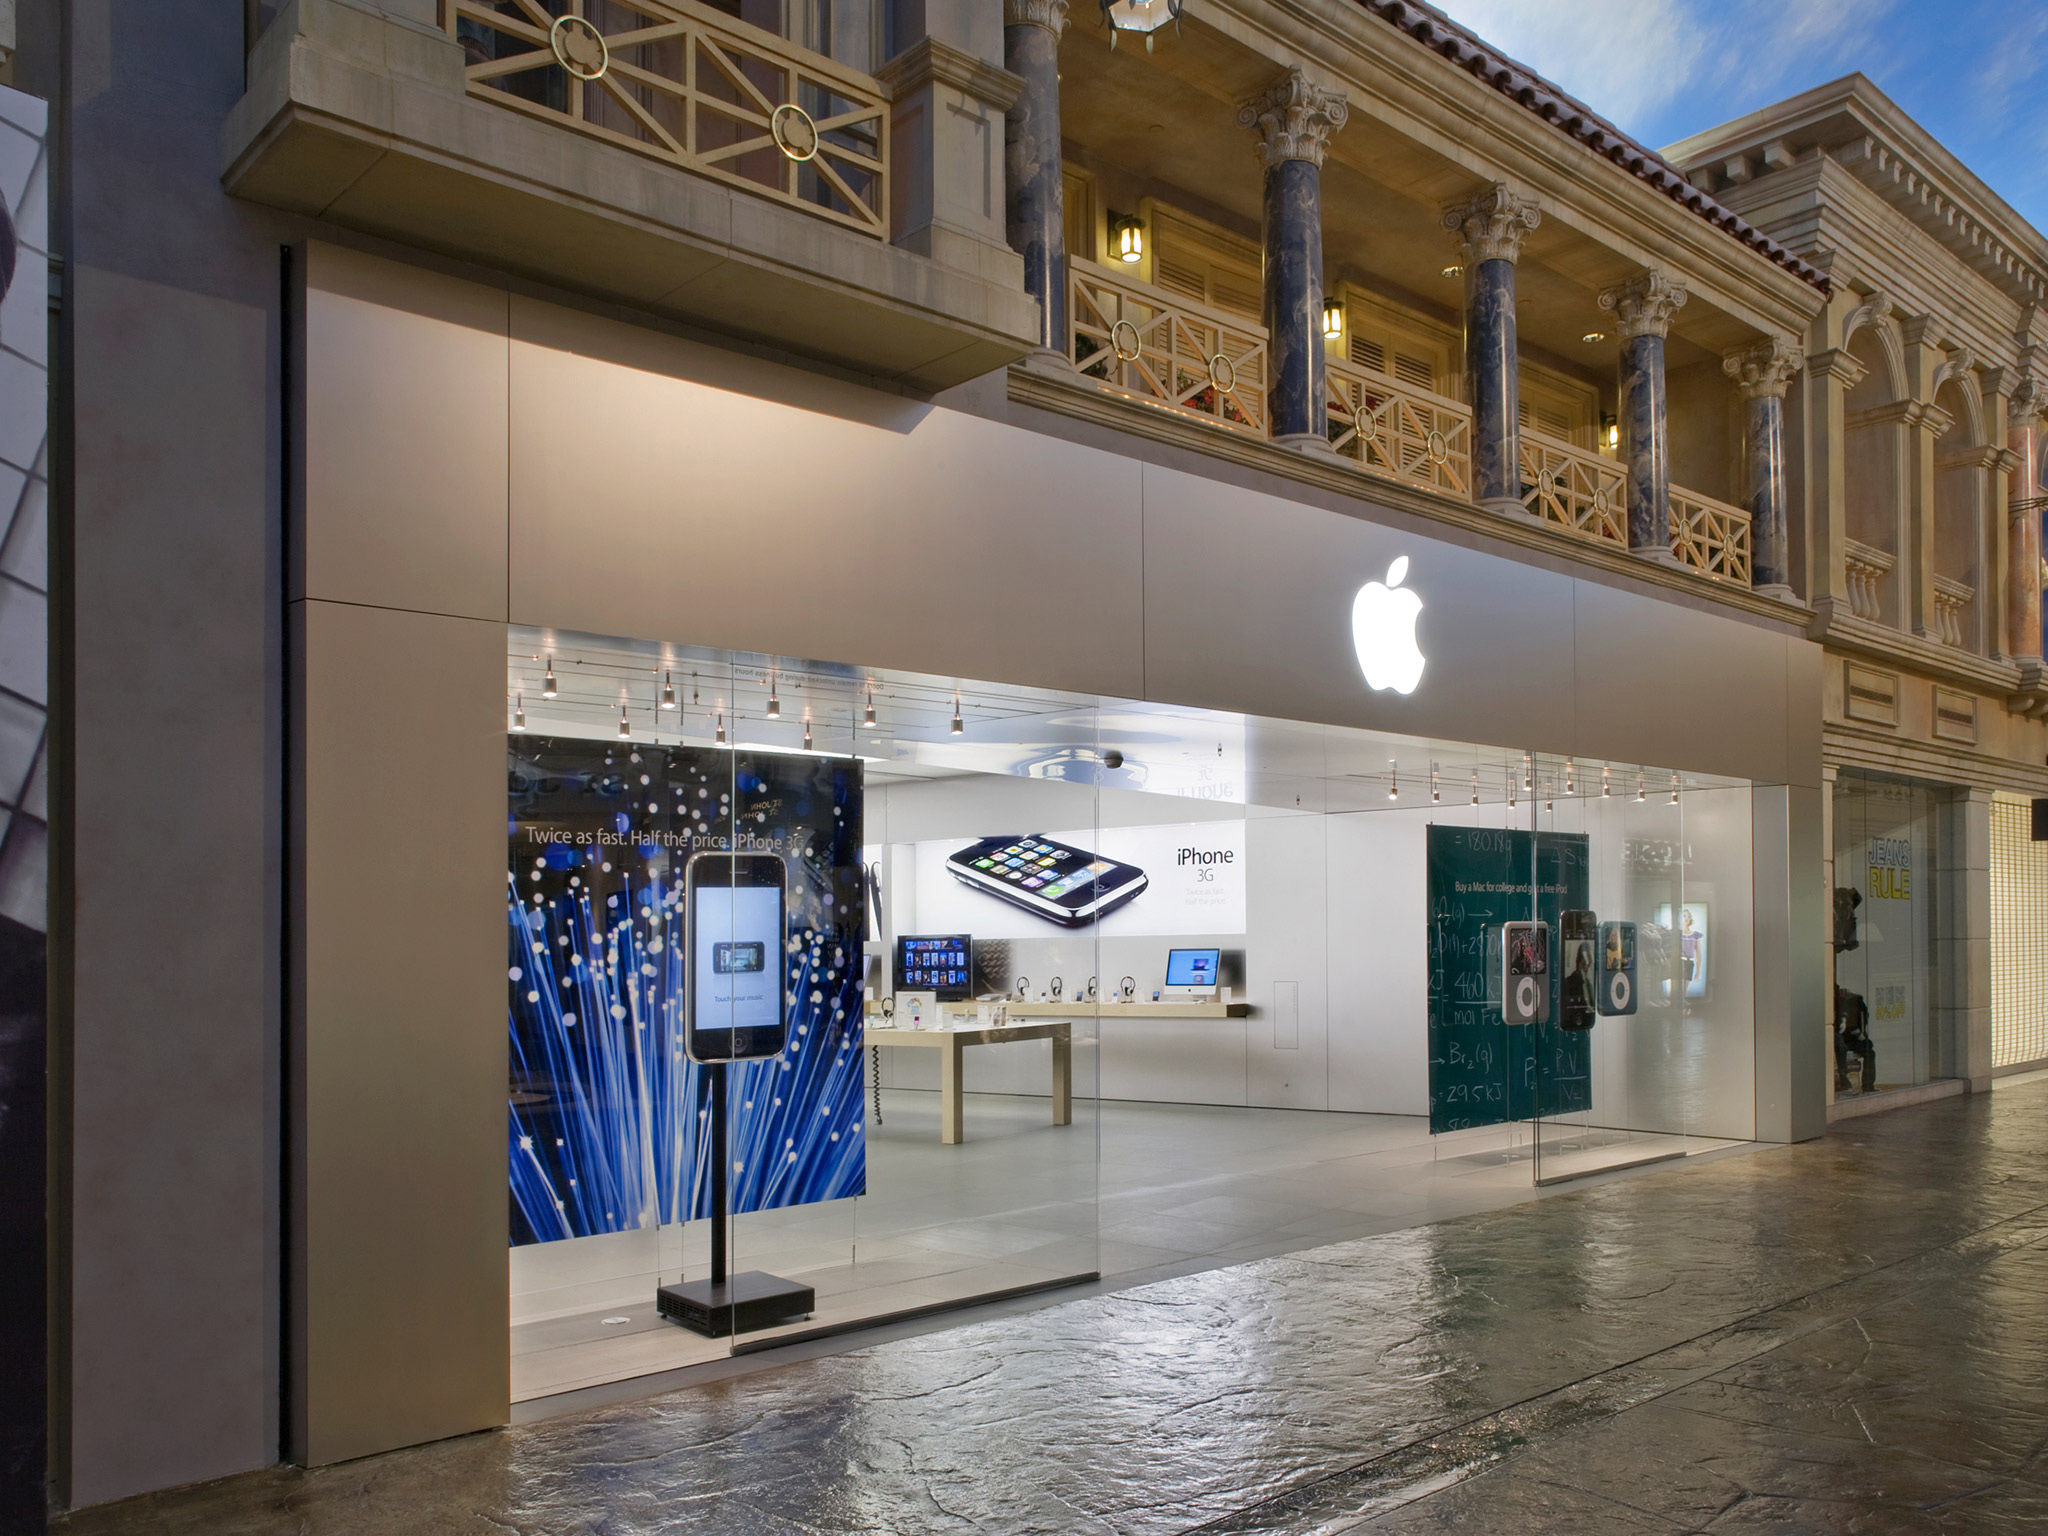 Shop forum. Бутик в Лас Вегасе. Магазин Apple в Вегасе. Forum shops в Лас-Вегасе. The Grand Shoppes (Лас-Вегас, США).